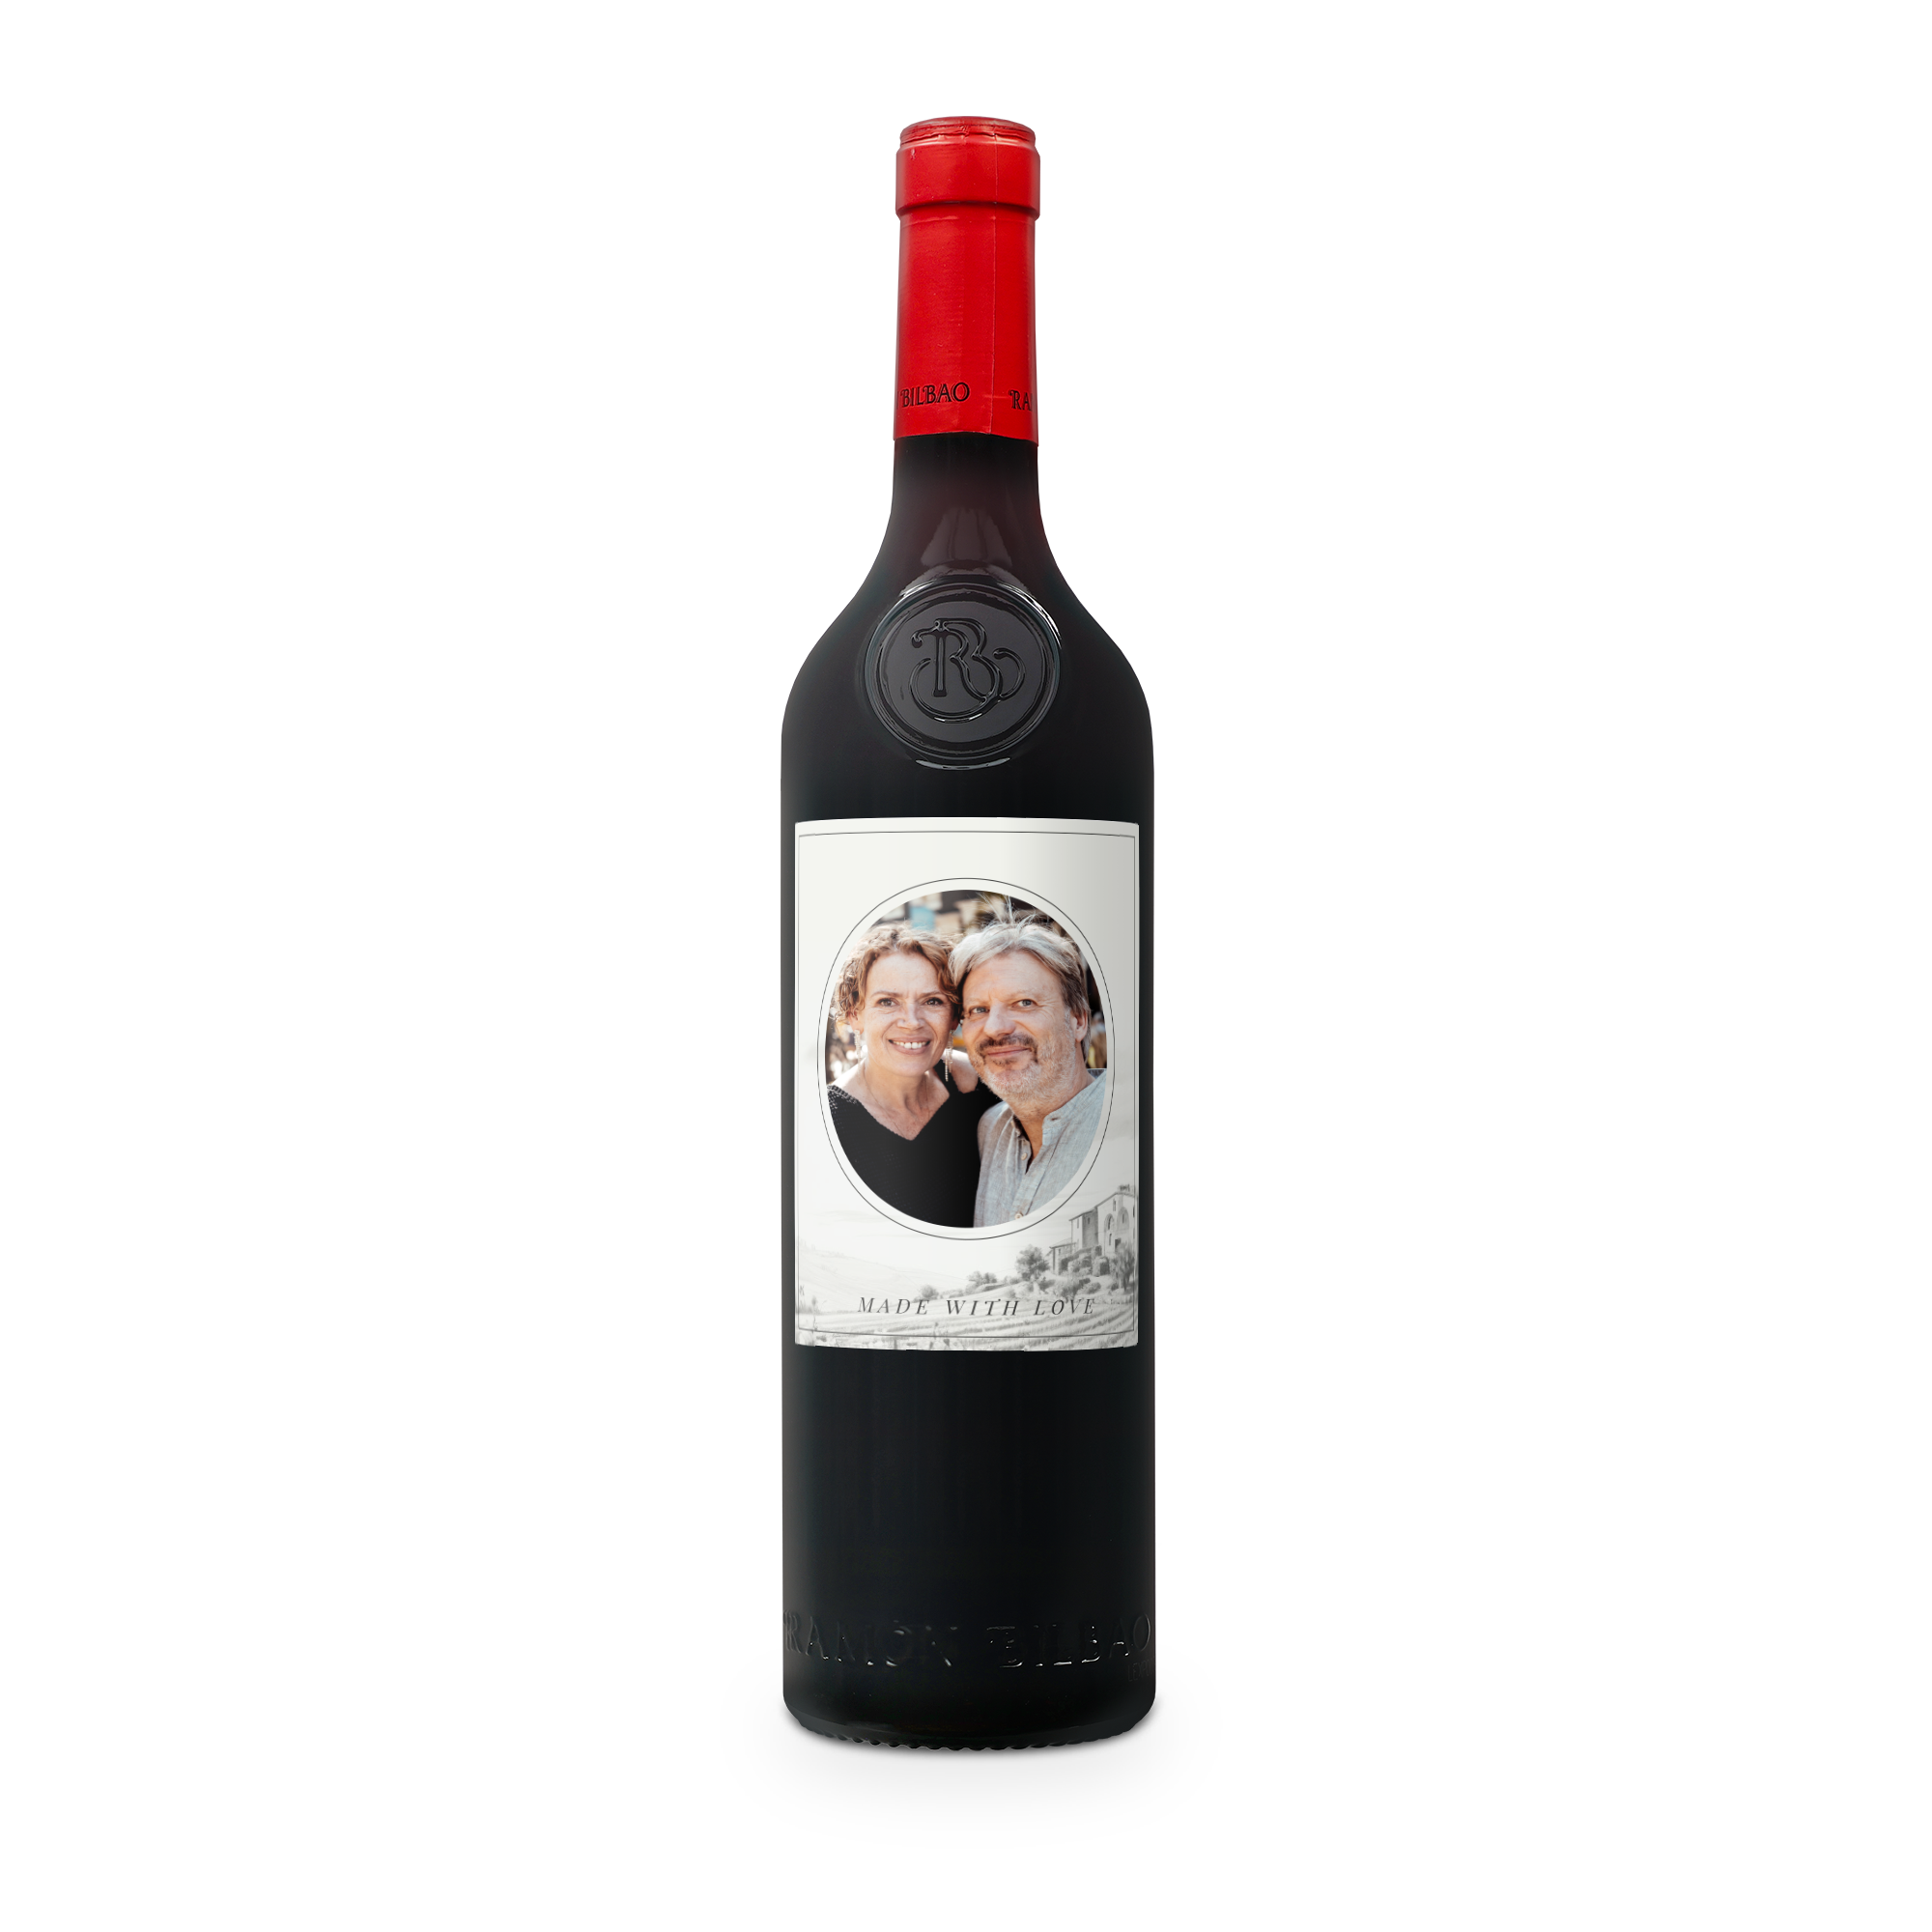 Personalised Wine - Ramon Bilbao Crianza